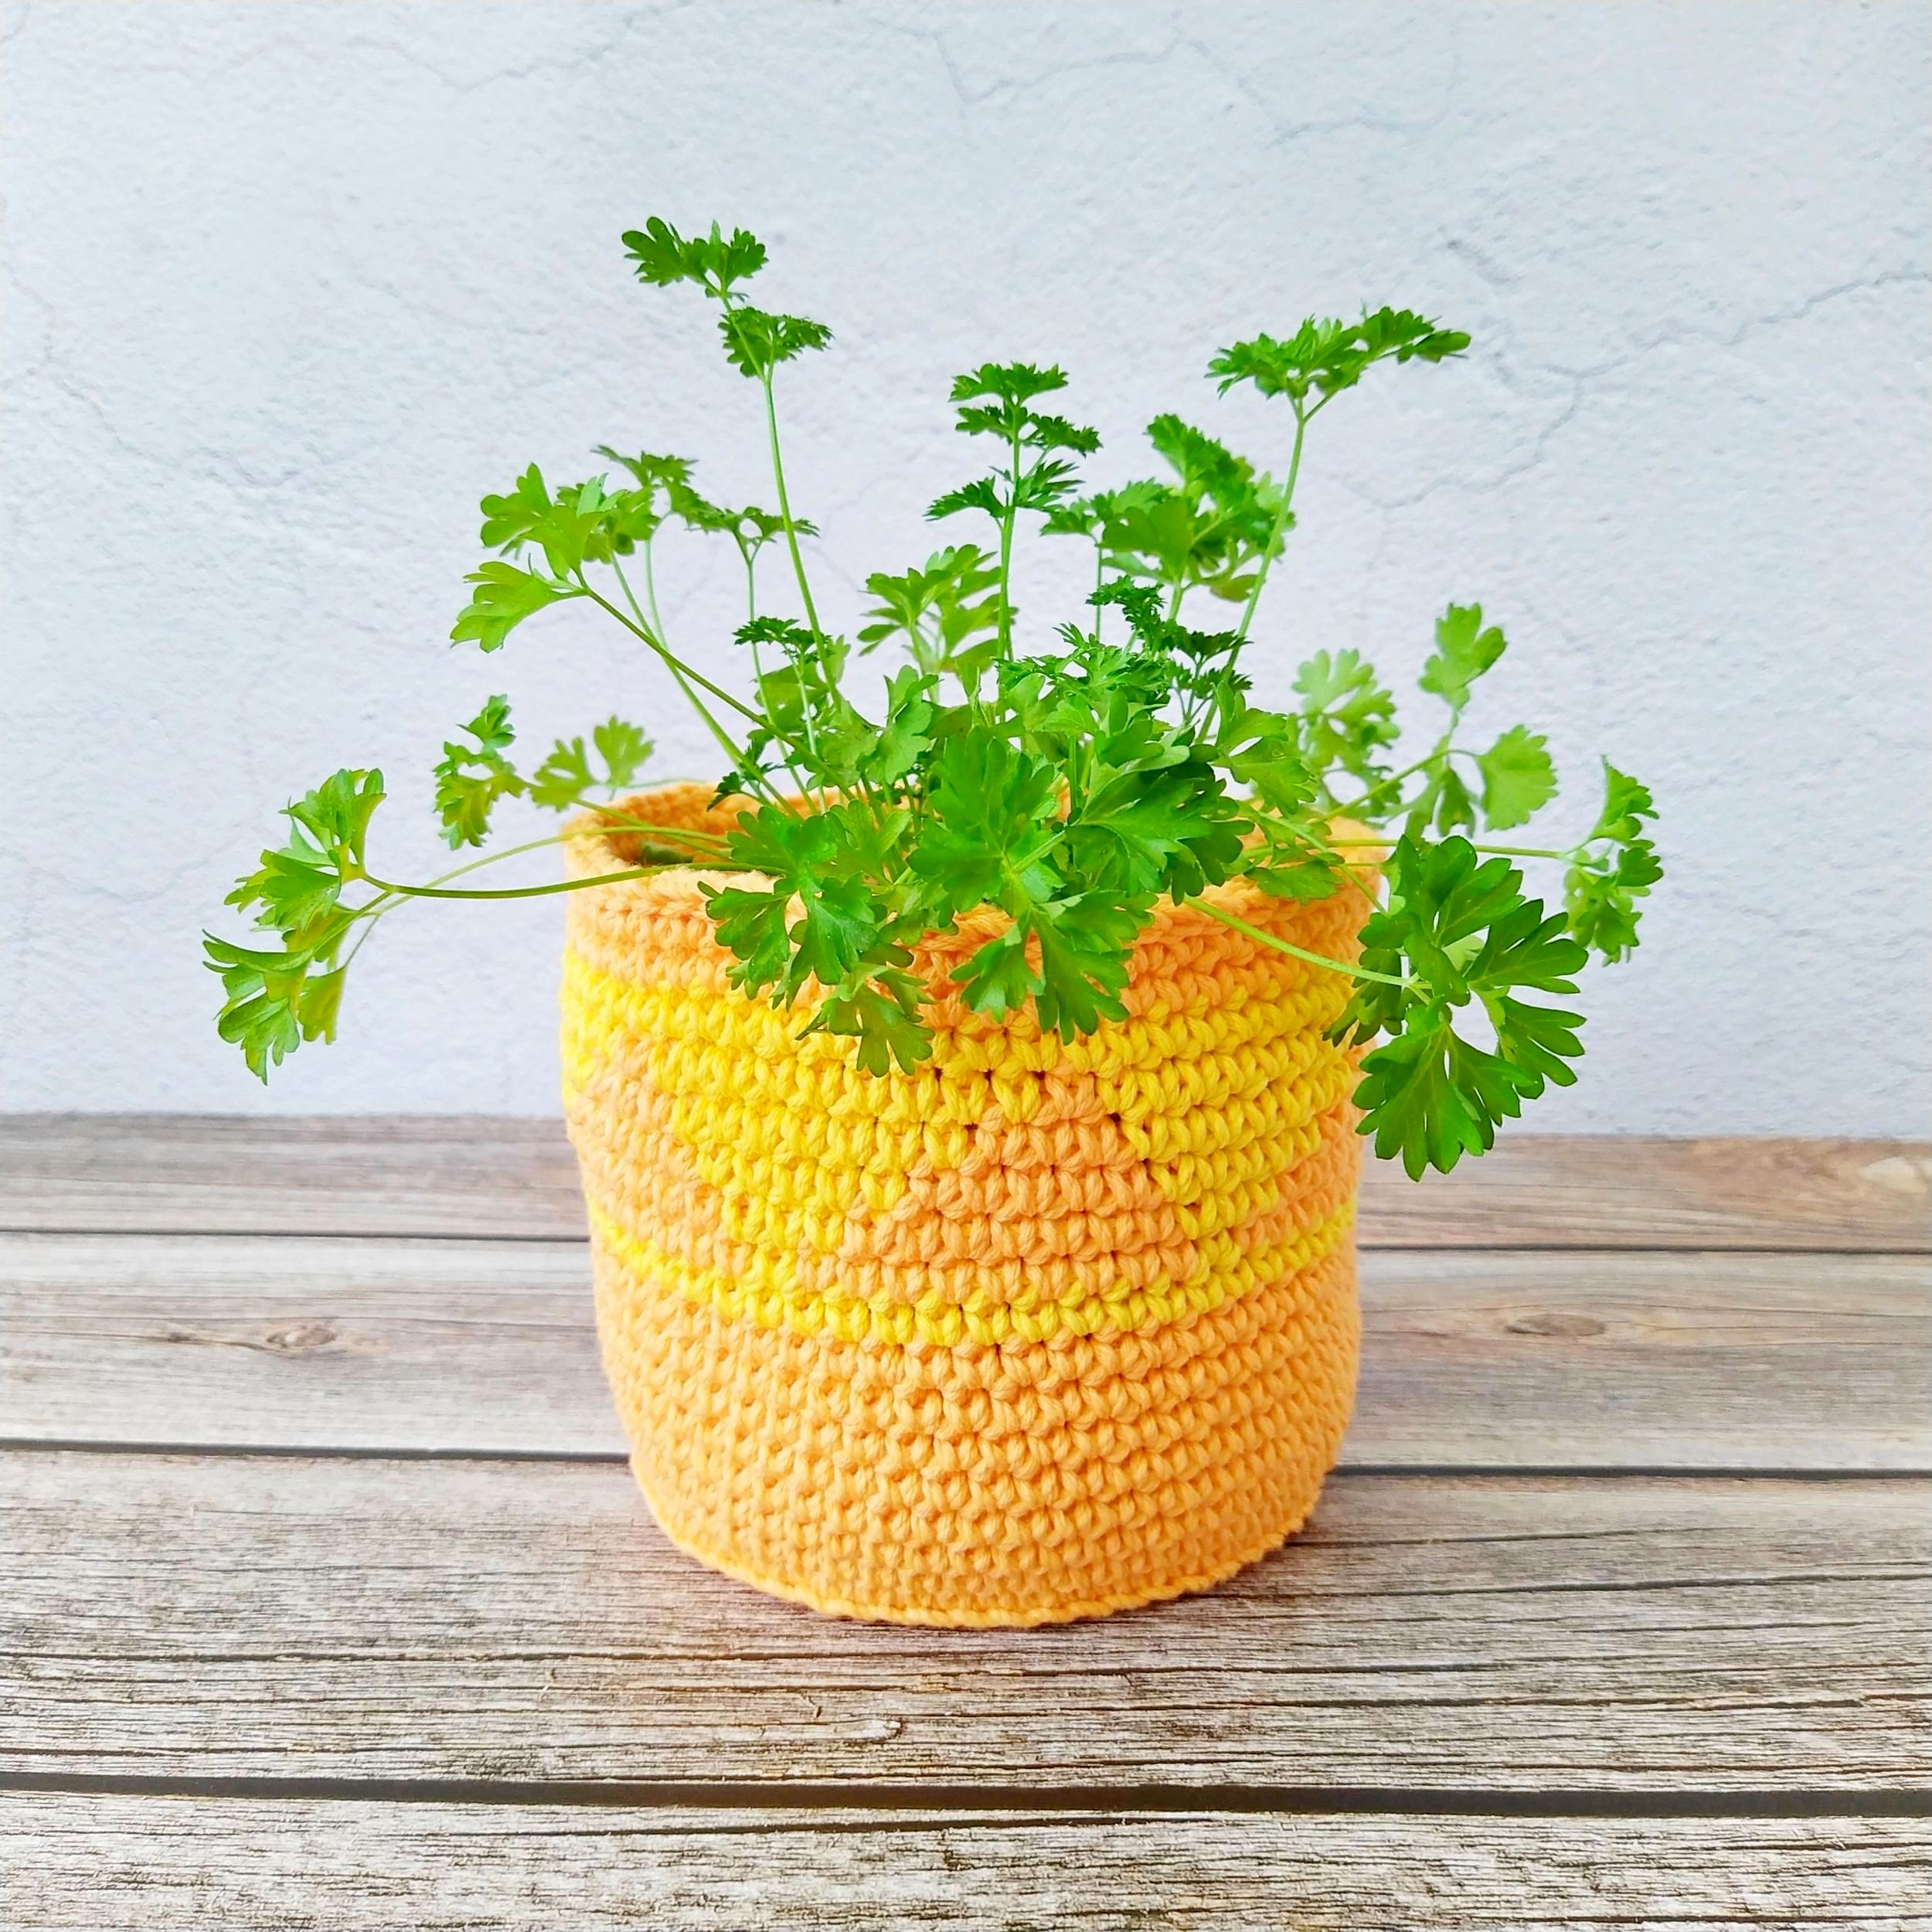 Decorative plant pot covers - Flower pot cover ideas 3 sizes